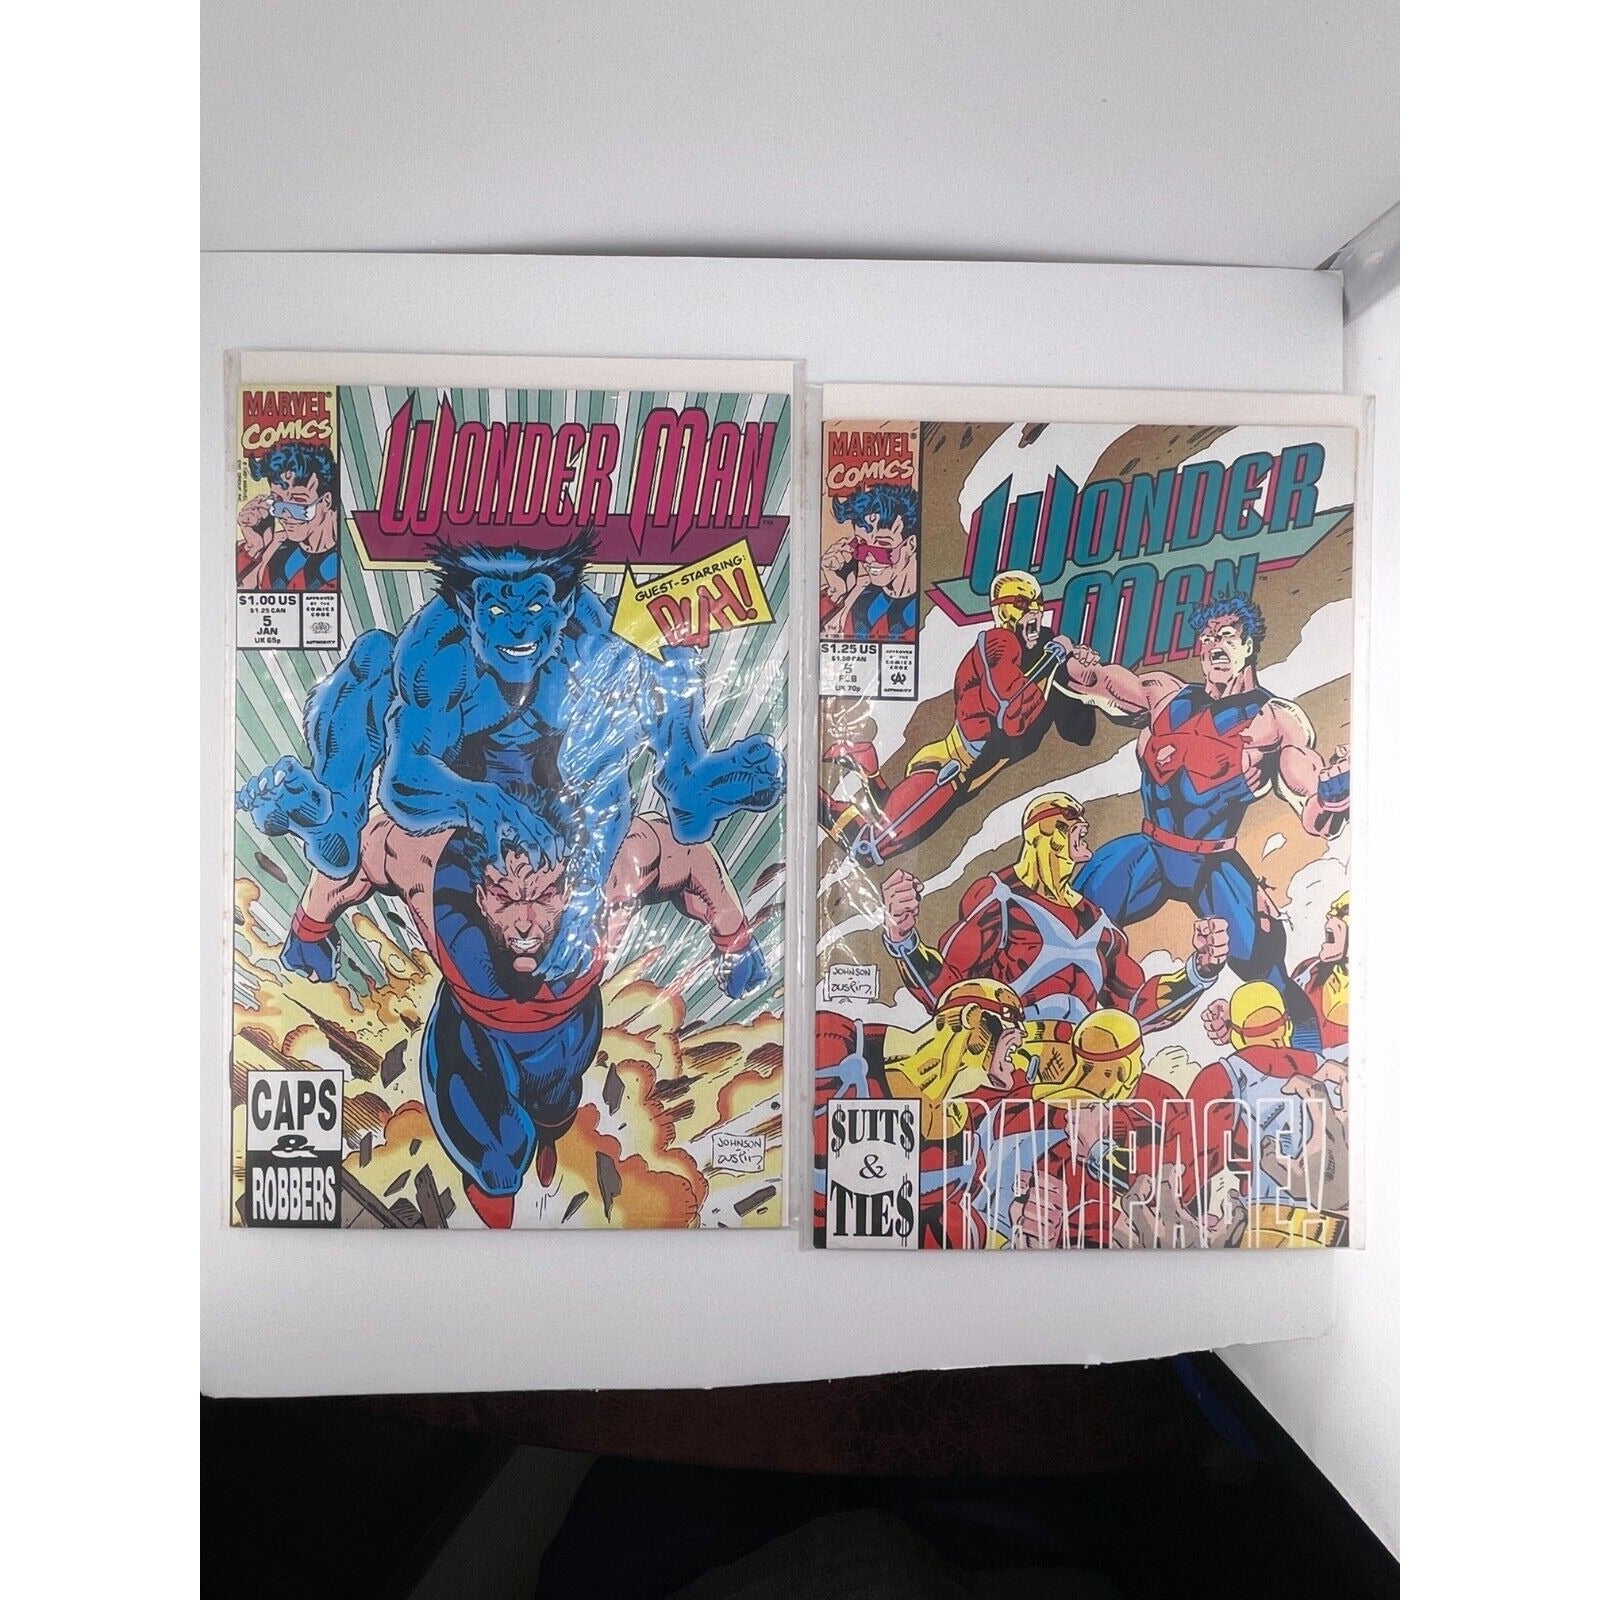 Marvel Premiere 55+ Wonder Man  #1-29 + 2 Annuals Complete Run 1991 + 1 shot